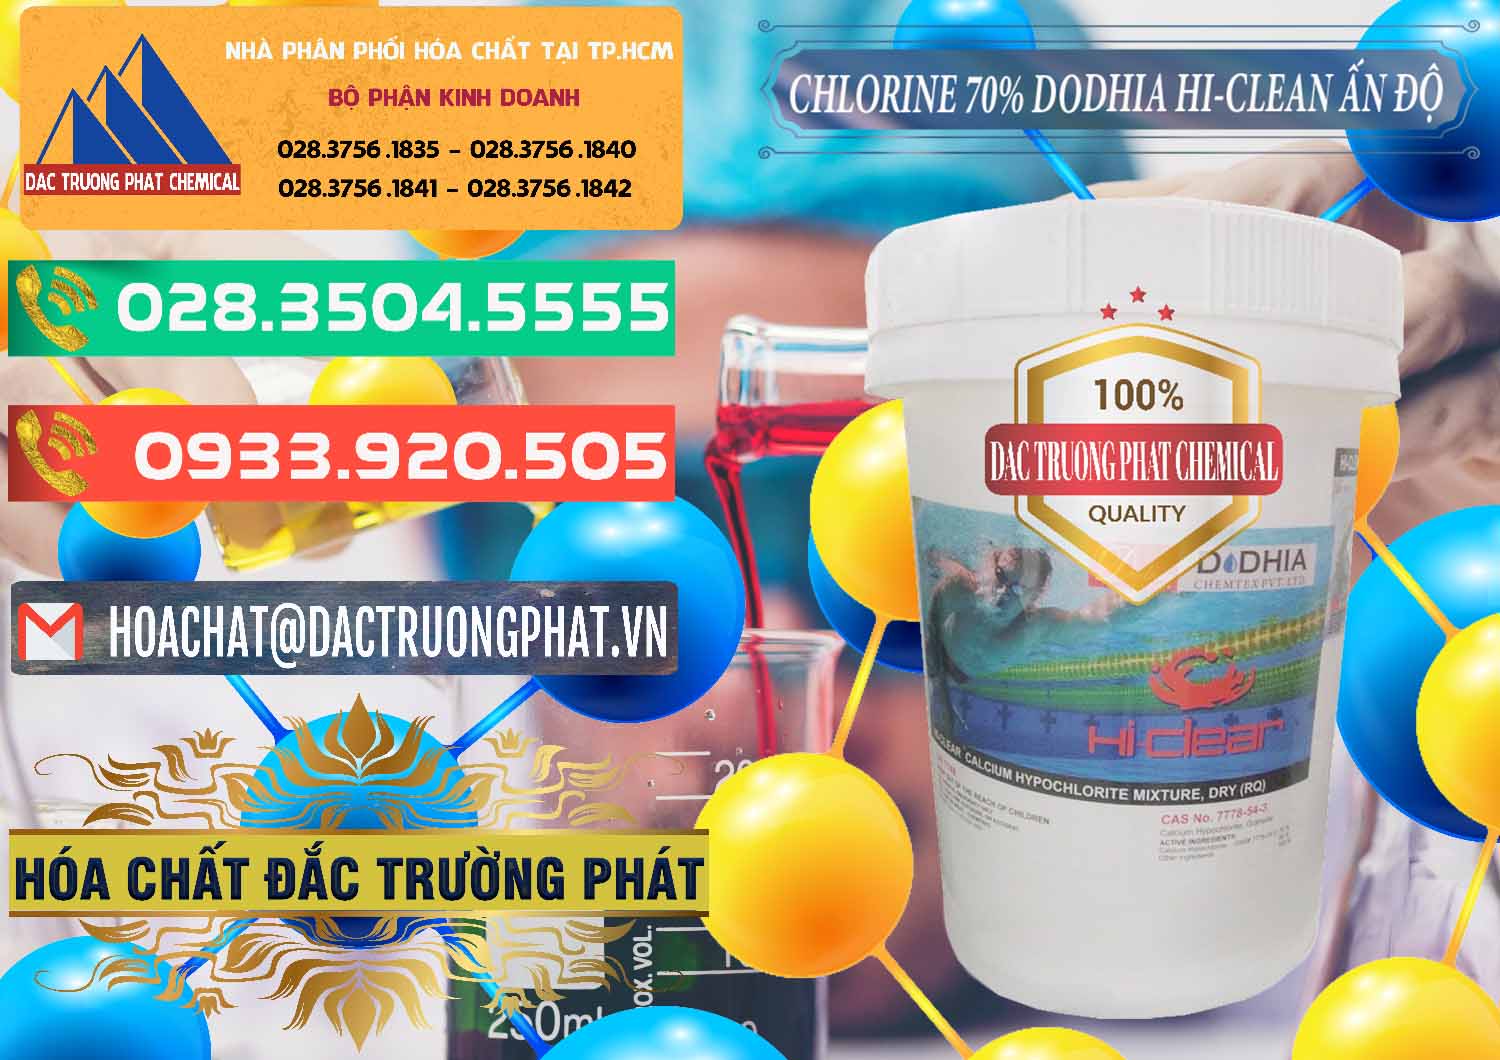 Nơi kinh doanh & bán Chlorine – Clorin 70% Dodhia Hi-Clean Ấn Độ India - 0214 - Nhập khẩu ( phân phối ) hóa chất tại TP.HCM - congtyhoachat.com.vn